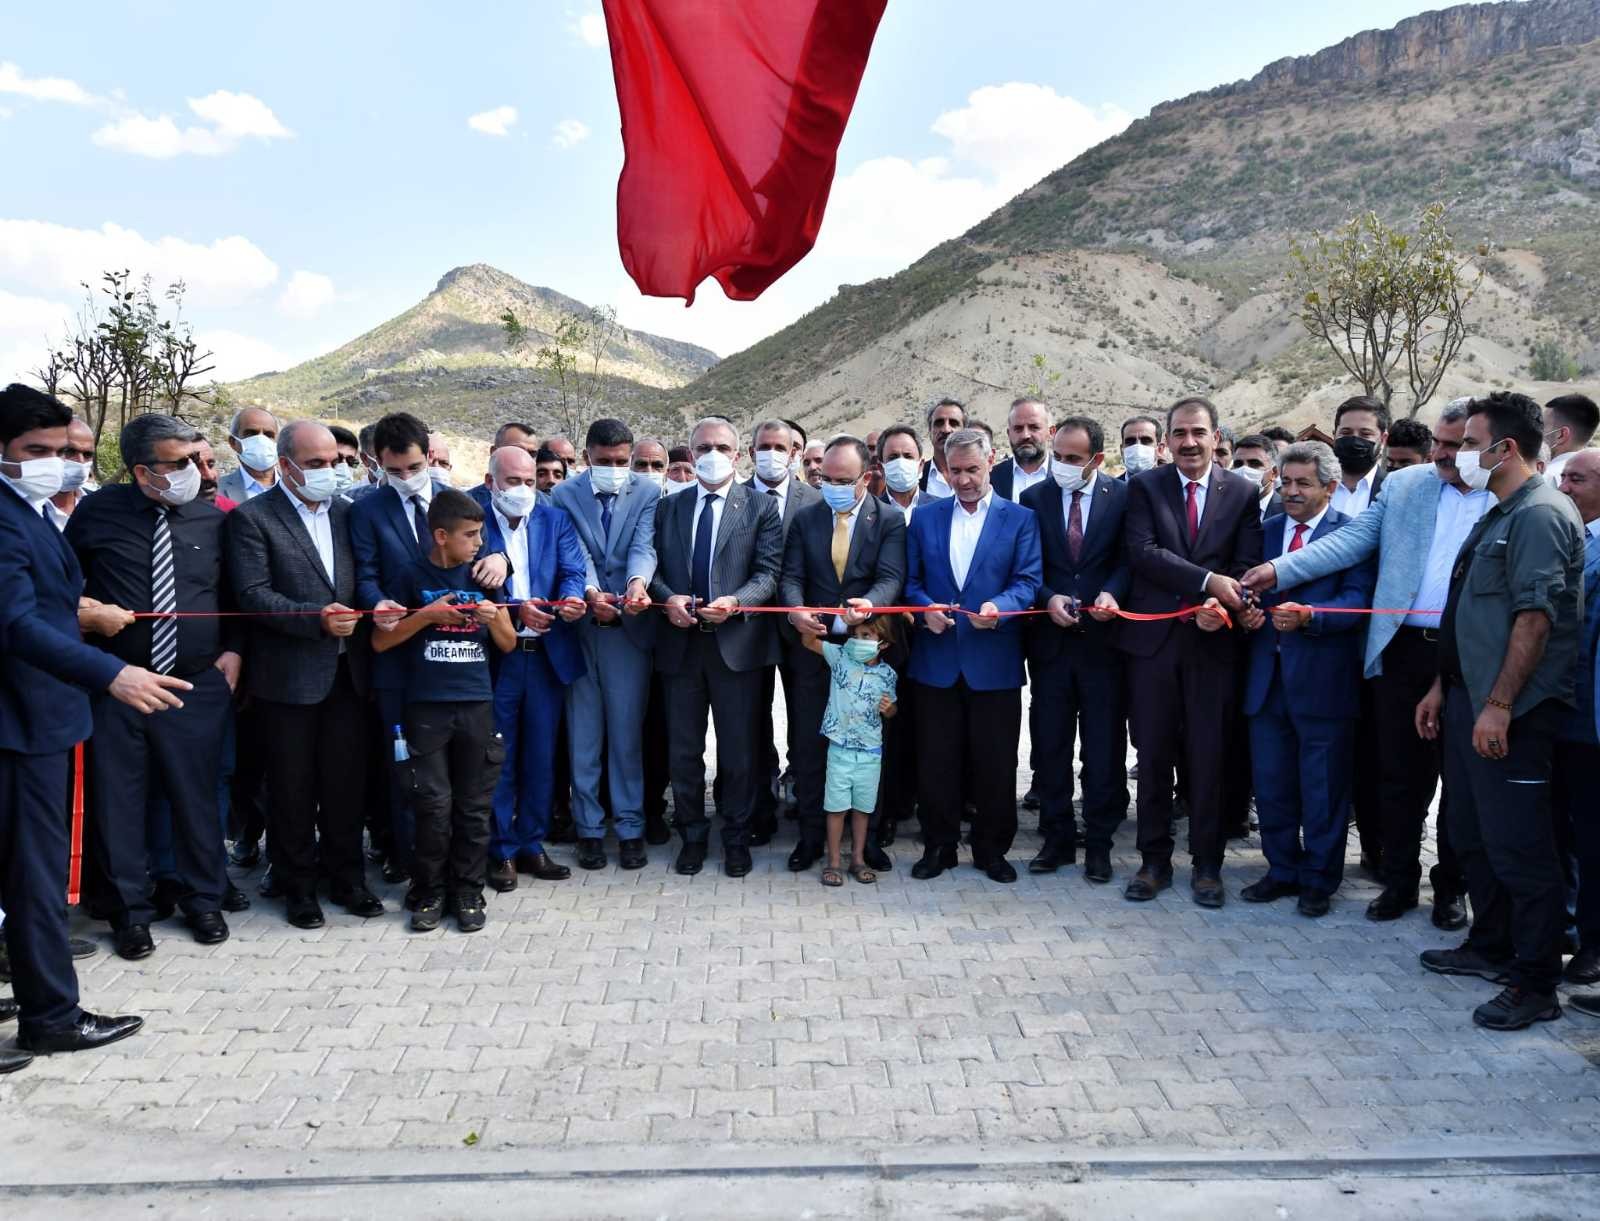 Vali Münir Karaloğlu, Üçocak beldesinde toplu açılış törenine katıldı #diyarbakir